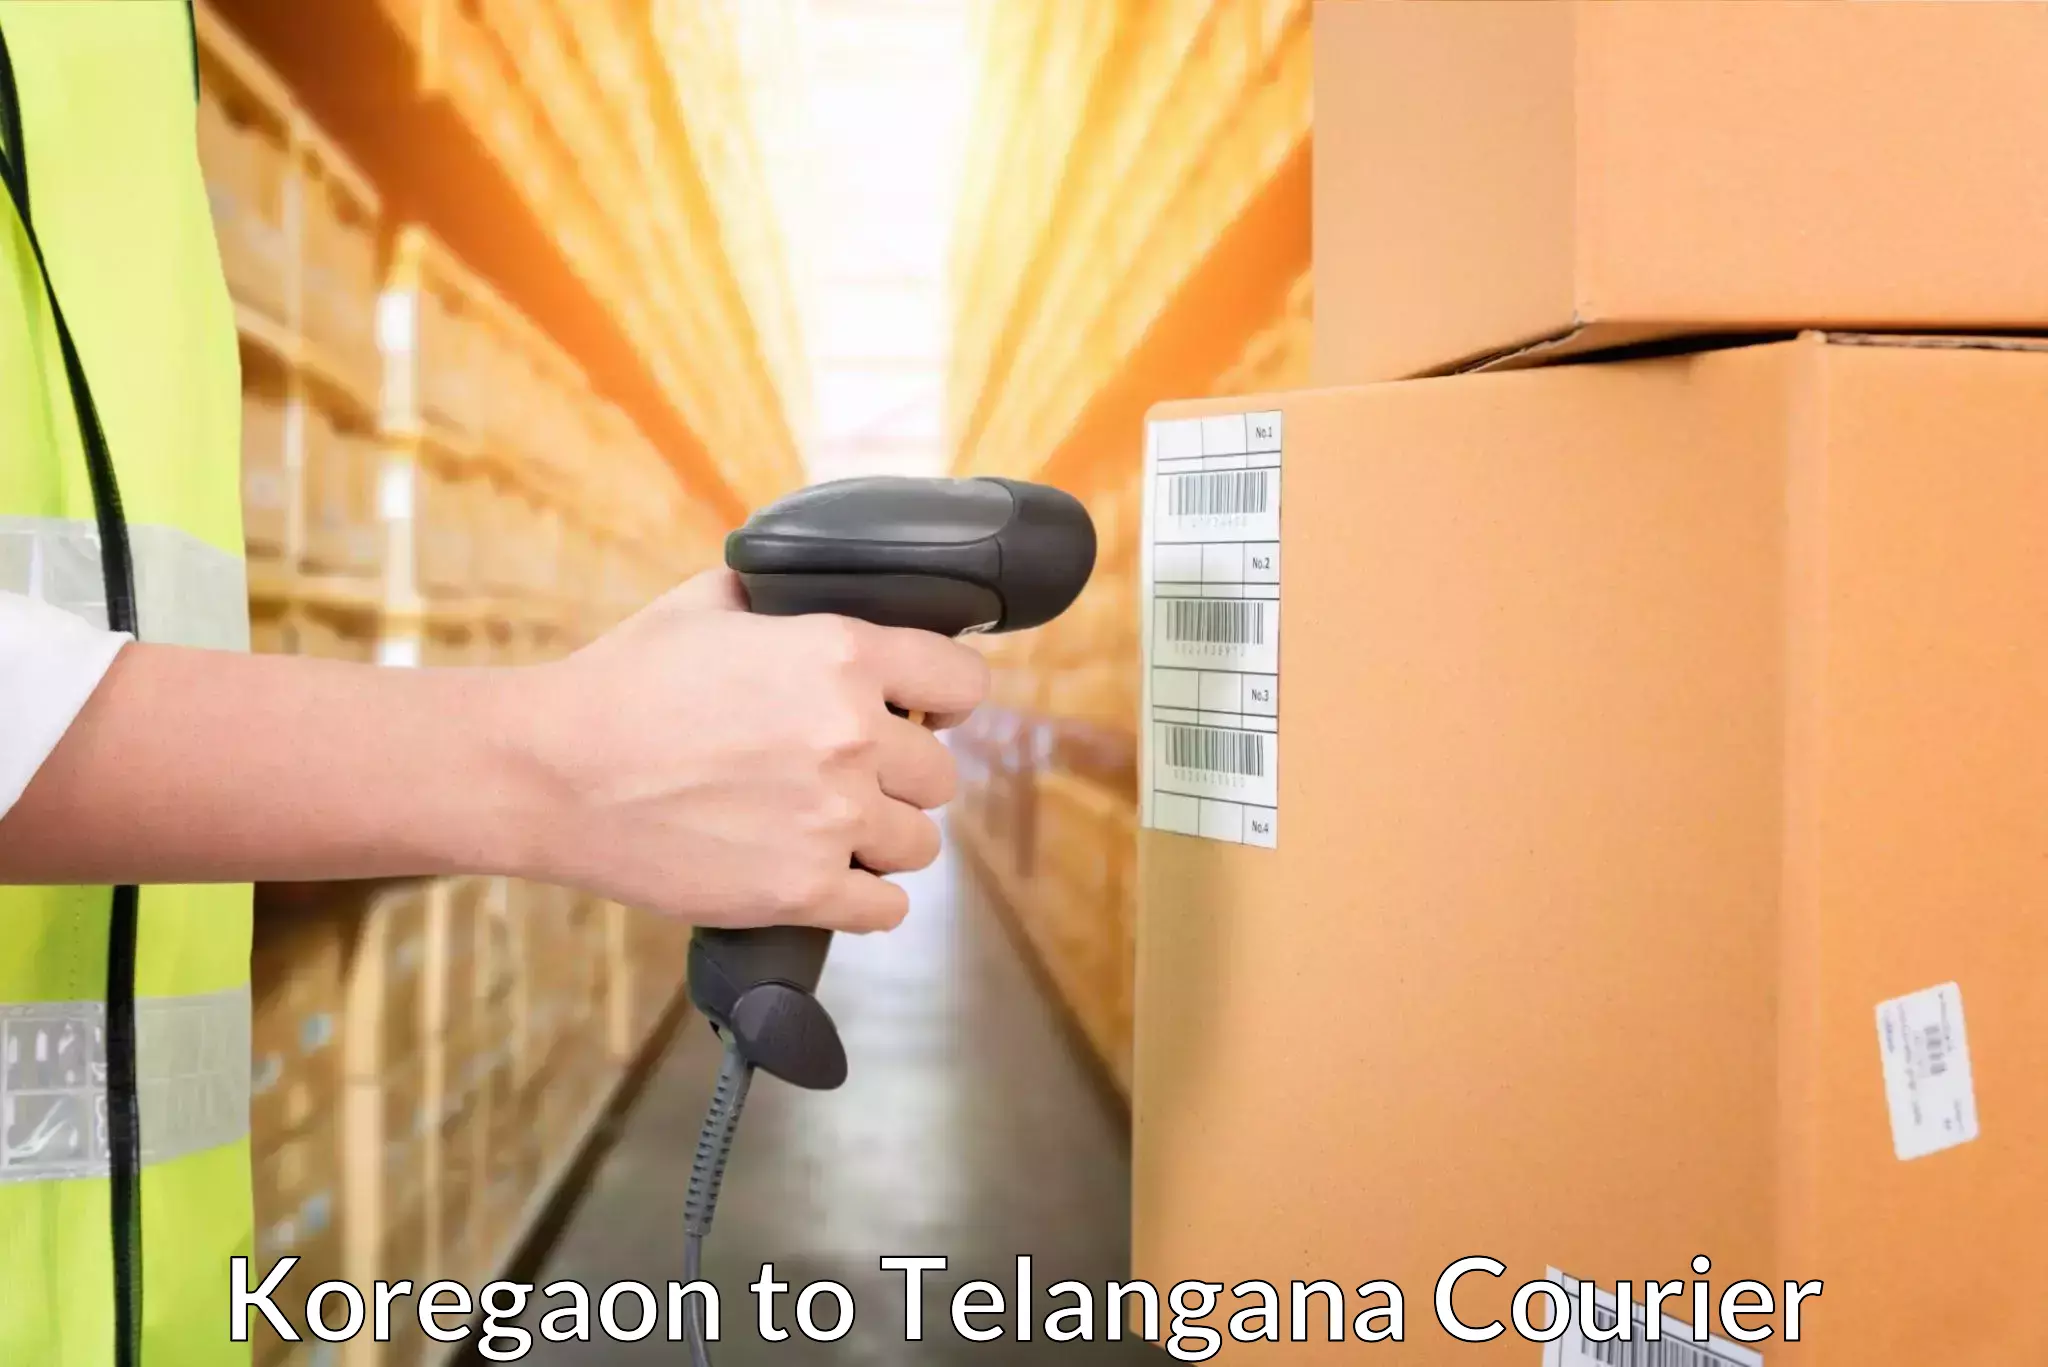 Speedy delivery service Koregaon to Nellikuduru